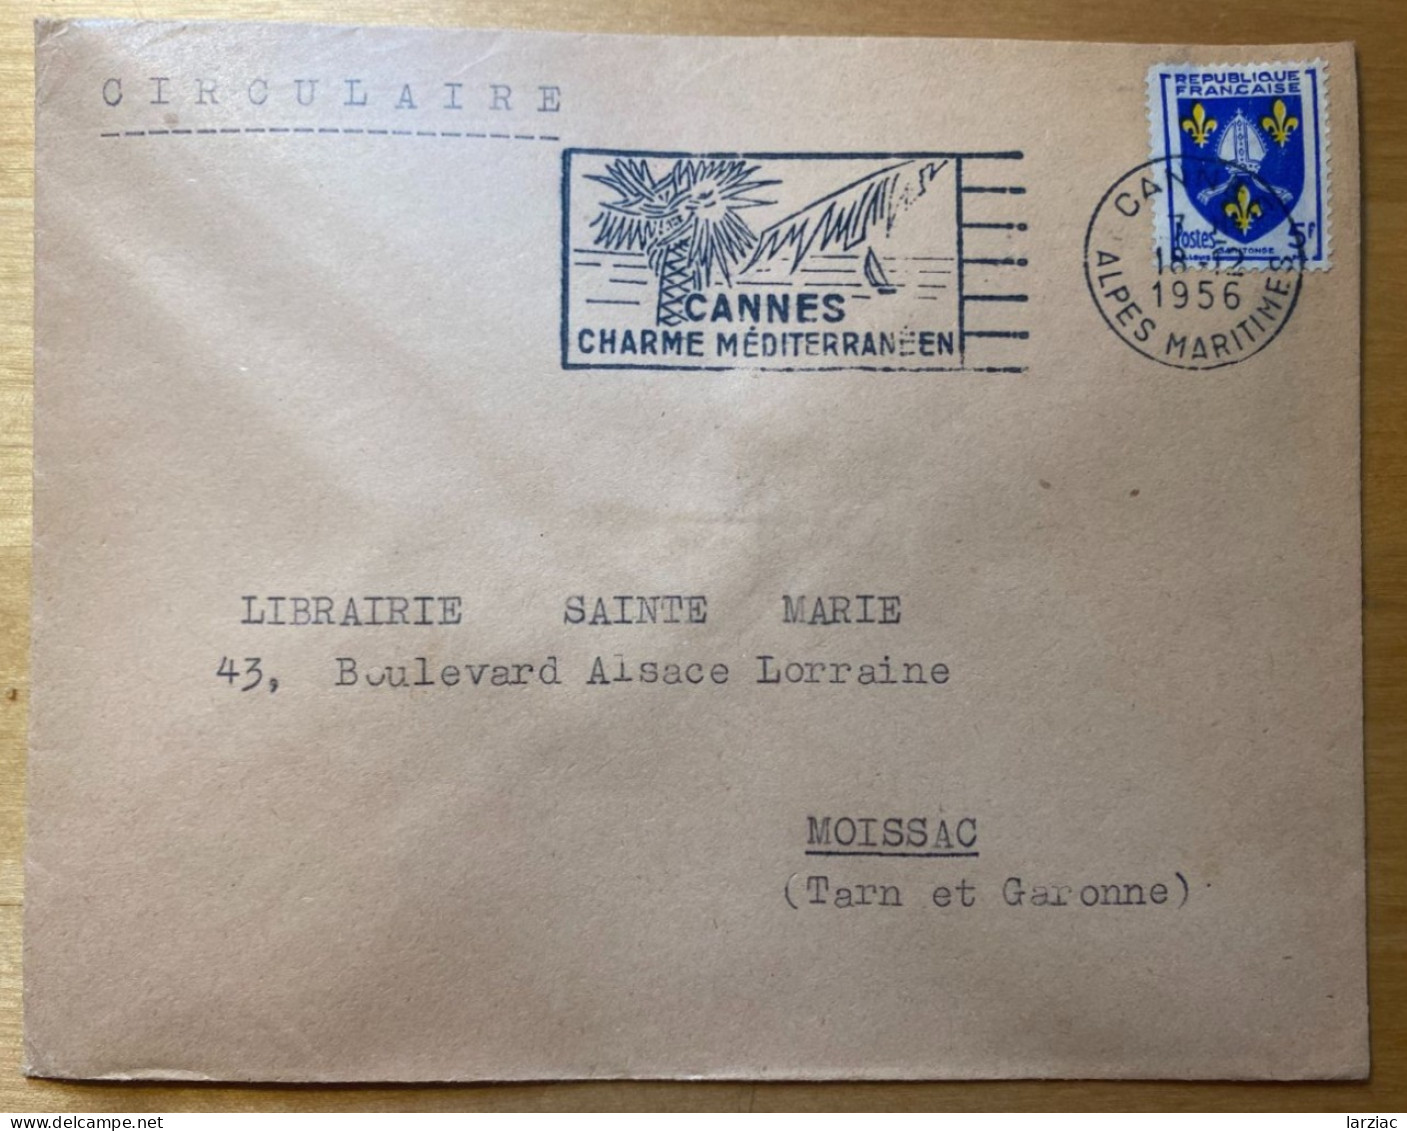 Enveloppe Affranchie Blason Saintonge Oblitération Flamme Cannes Alpes Maritimes 1956 Tarif Circulaire - Posttarieven